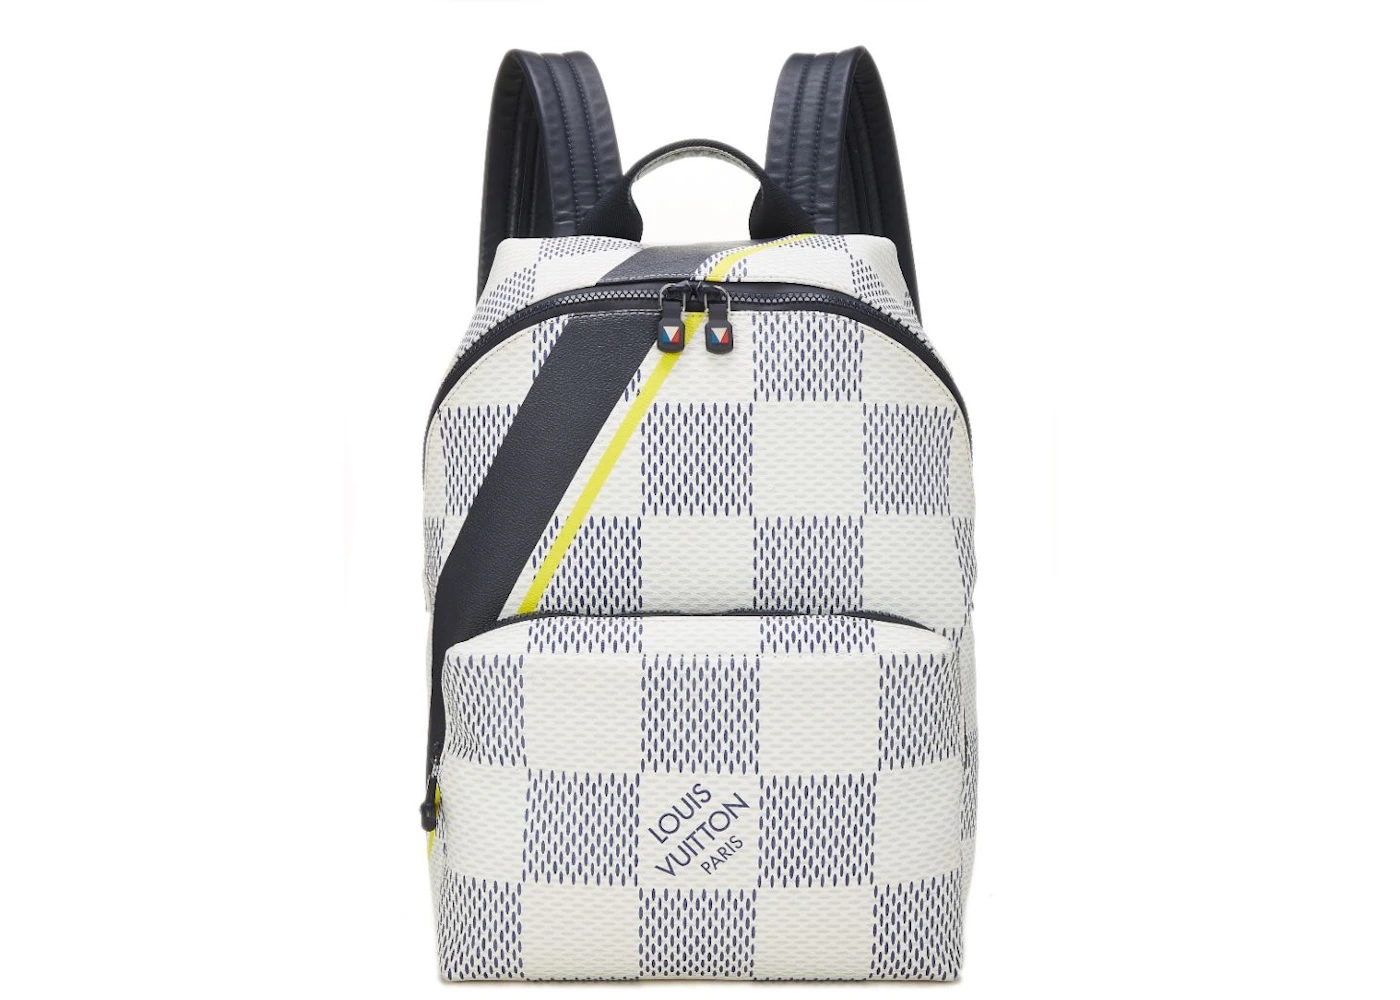 backpack damier azur